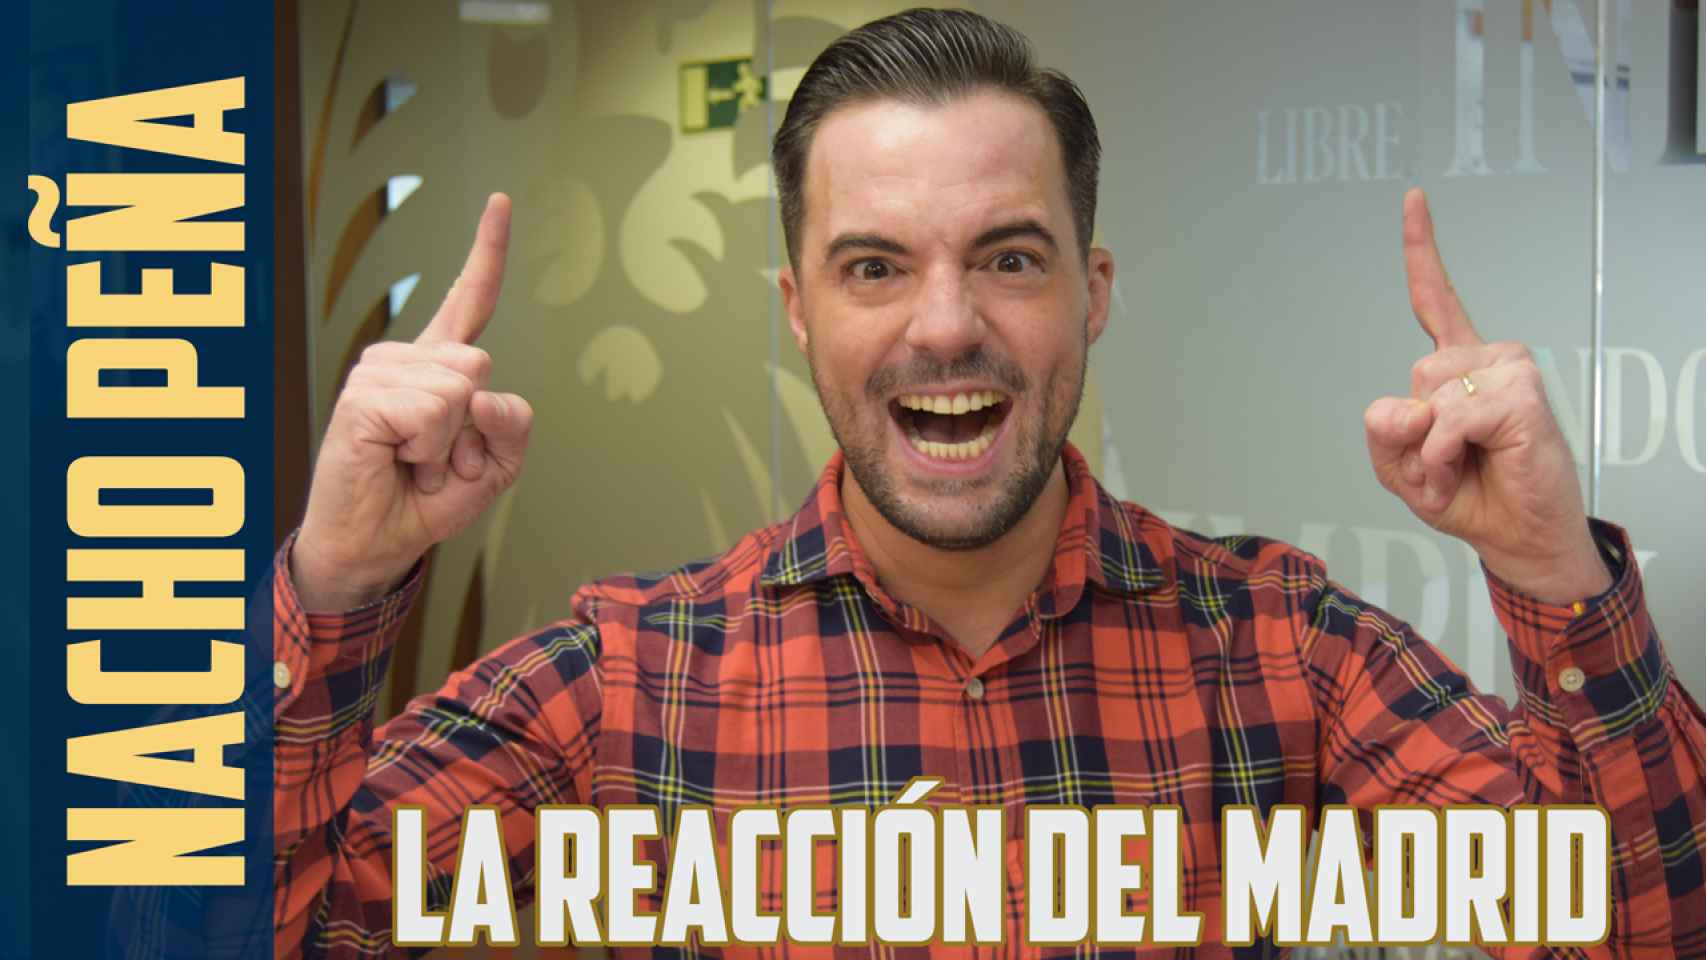 La reacción del Real Madrid, por Nacho Peña